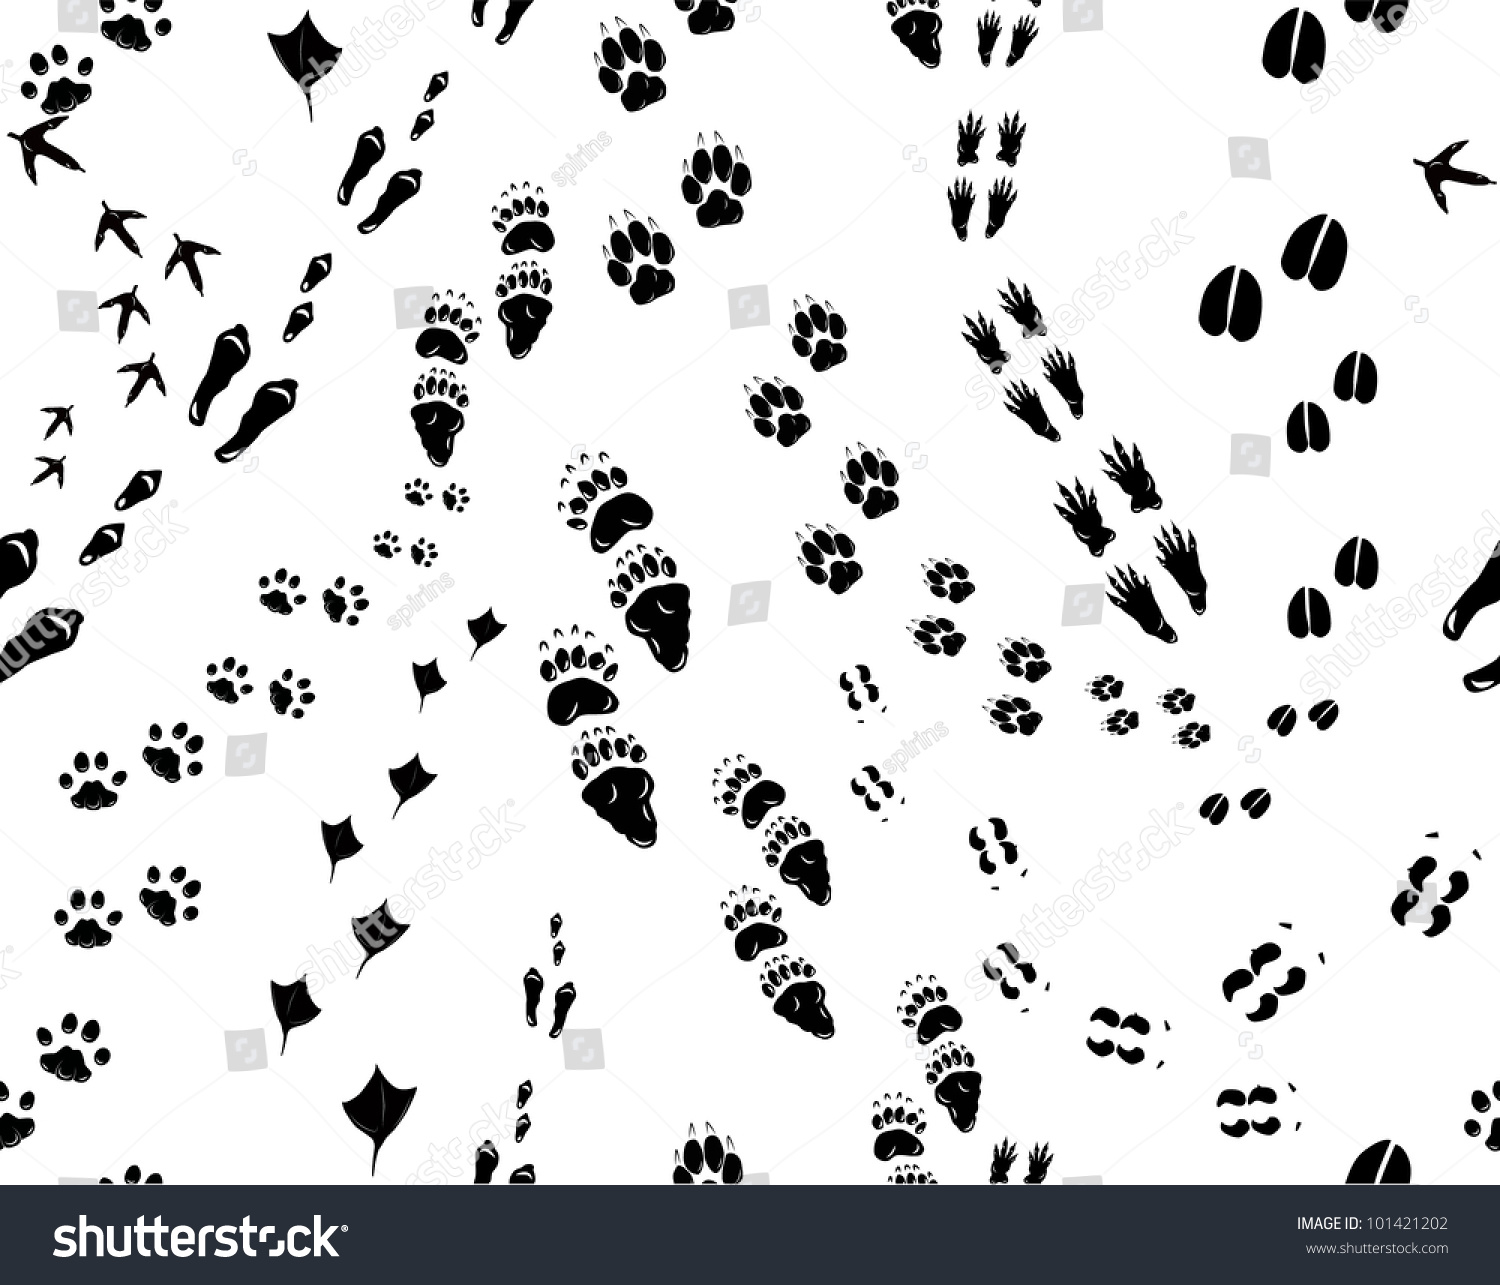 次の動物の足跡をシームレスにイラスト化 鳥 猫 鶏 鹿 犬 アヒル エルク 熊 リス ウサギ ウサギ ウサギ のベクター画像素材 ロイヤリティフリー